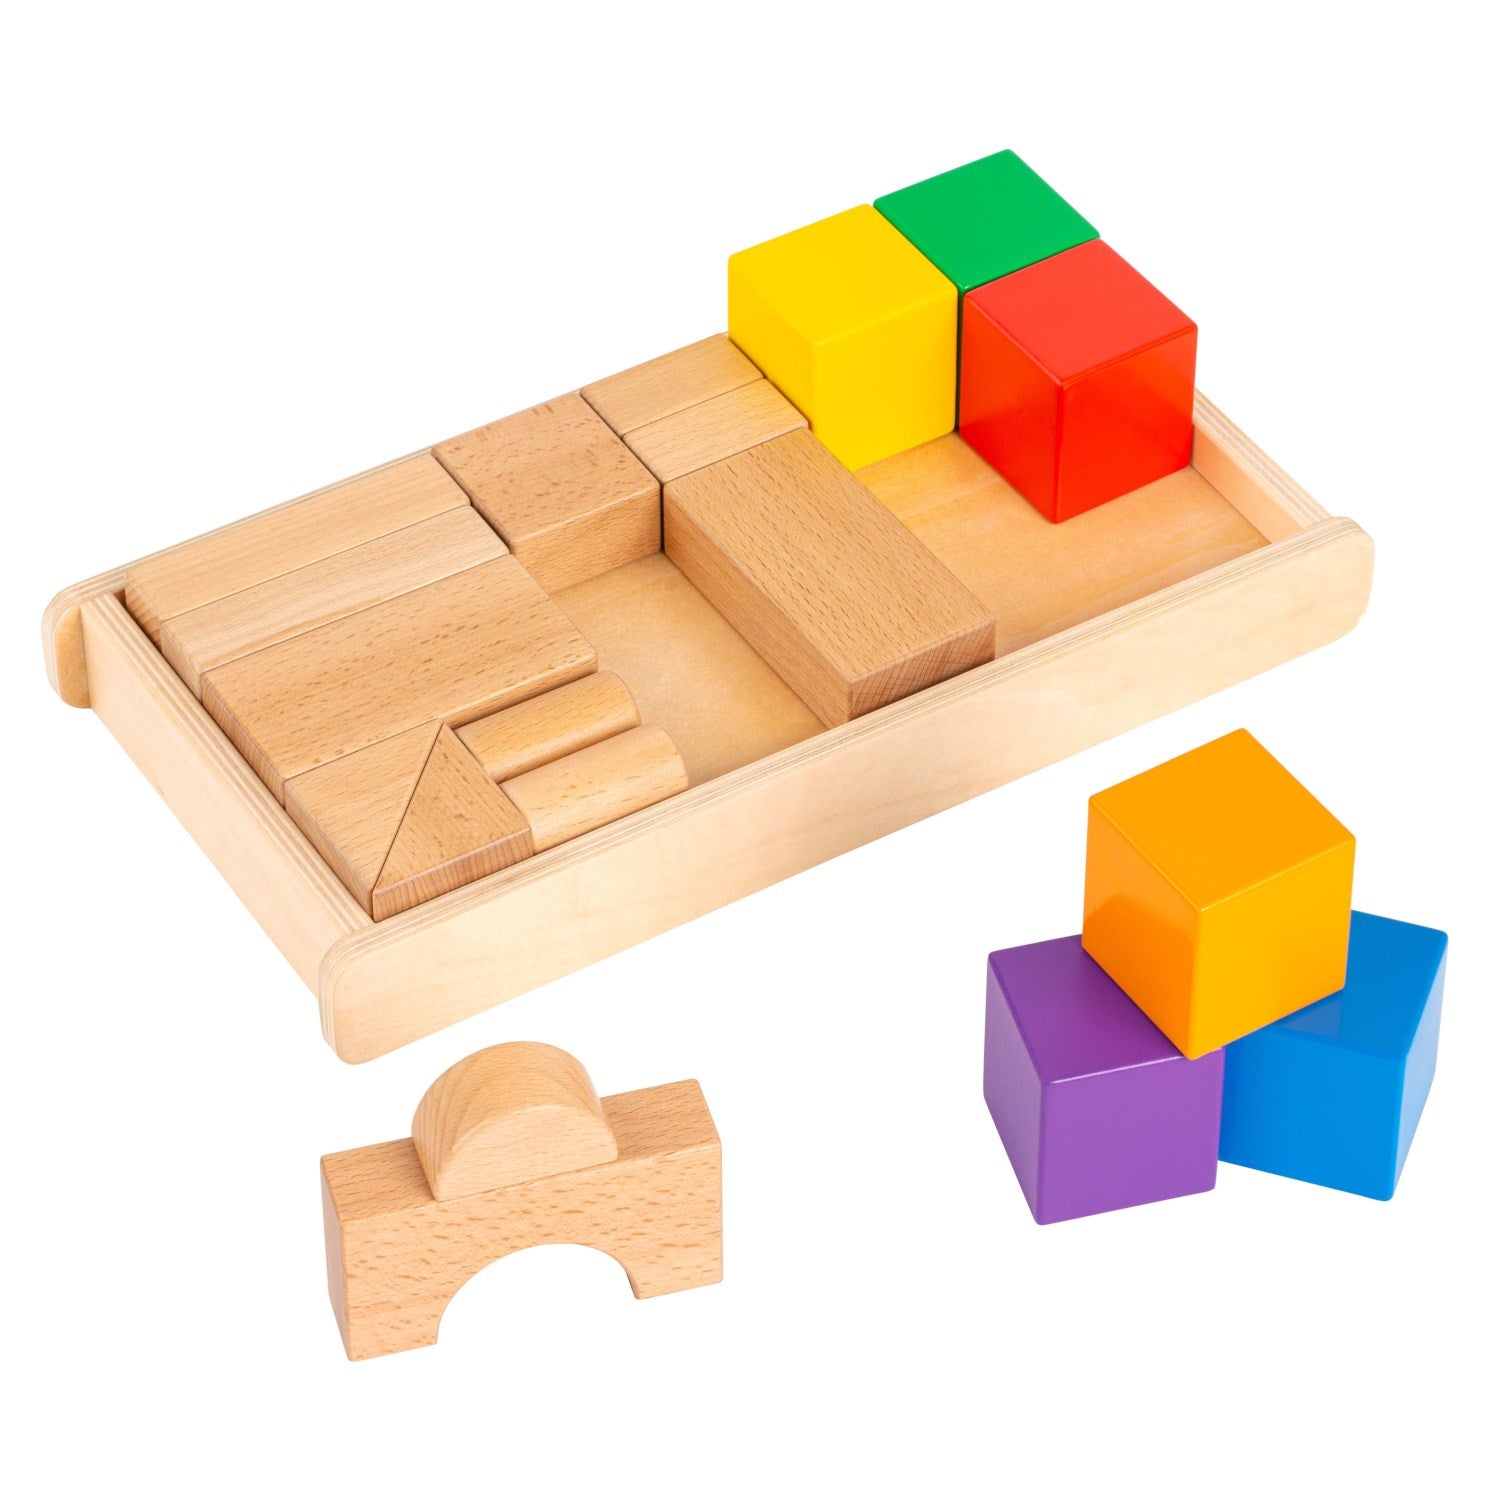 Klocki dla niemowlaka Montessori, wspierające rozwój manualny, poznawczy oraz zdolności przestrzenne i matematyczne, zaprojektowane specjalnie dla małych rączek.